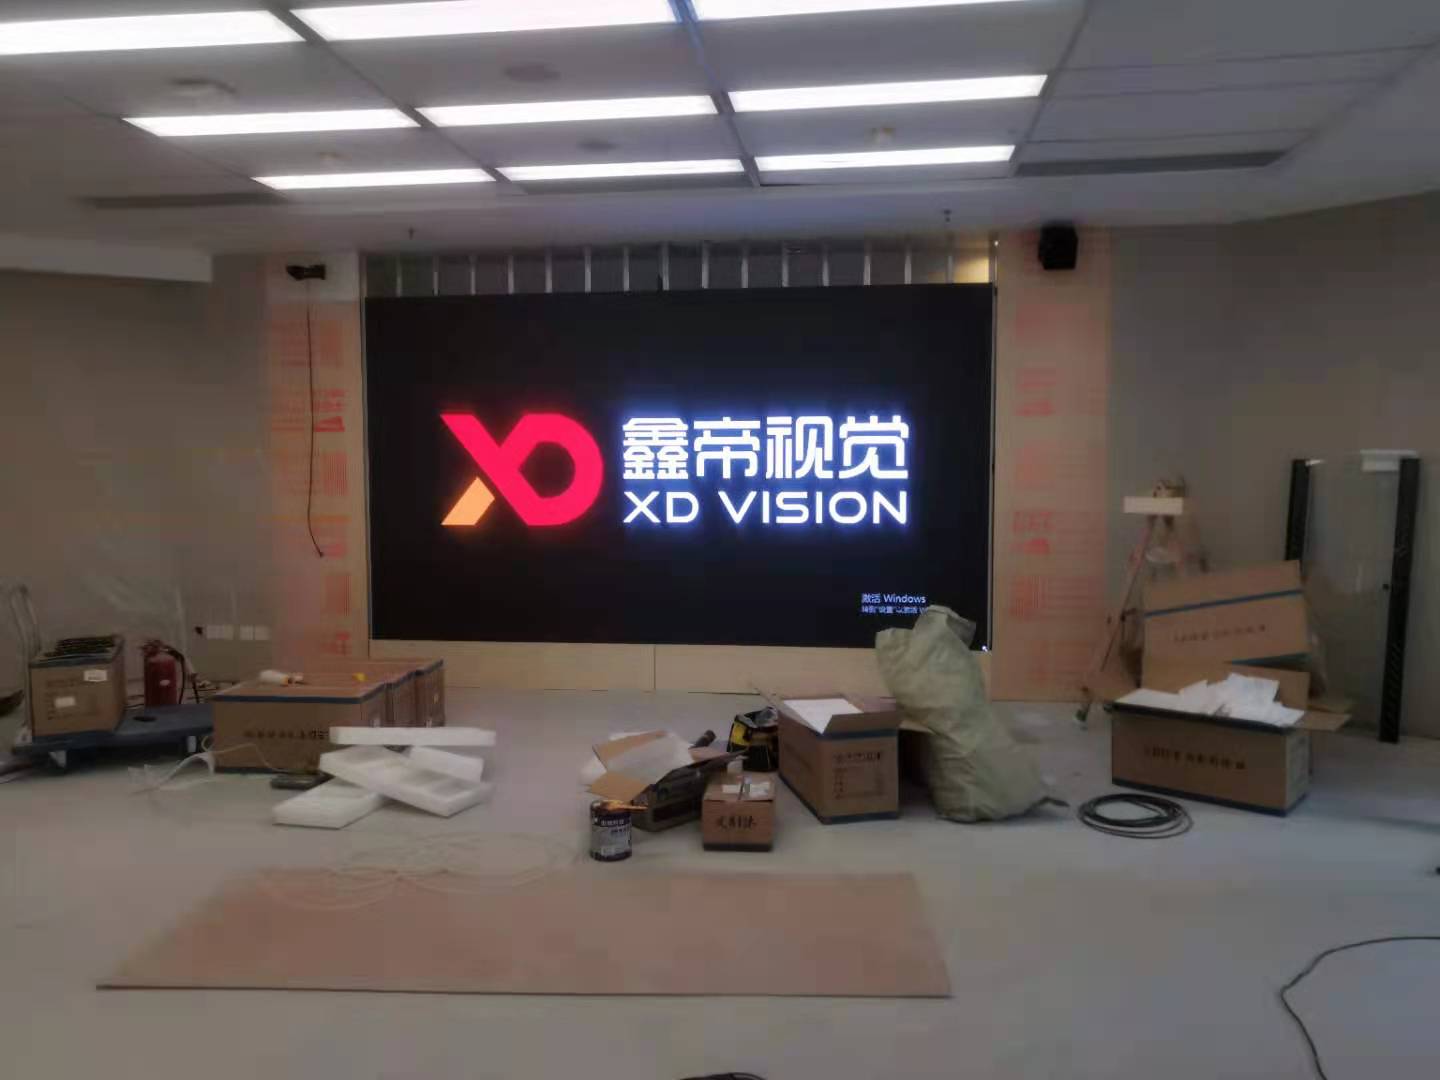 Centro de servicios de construcción del partido de Shanghái para cuadros jubilados